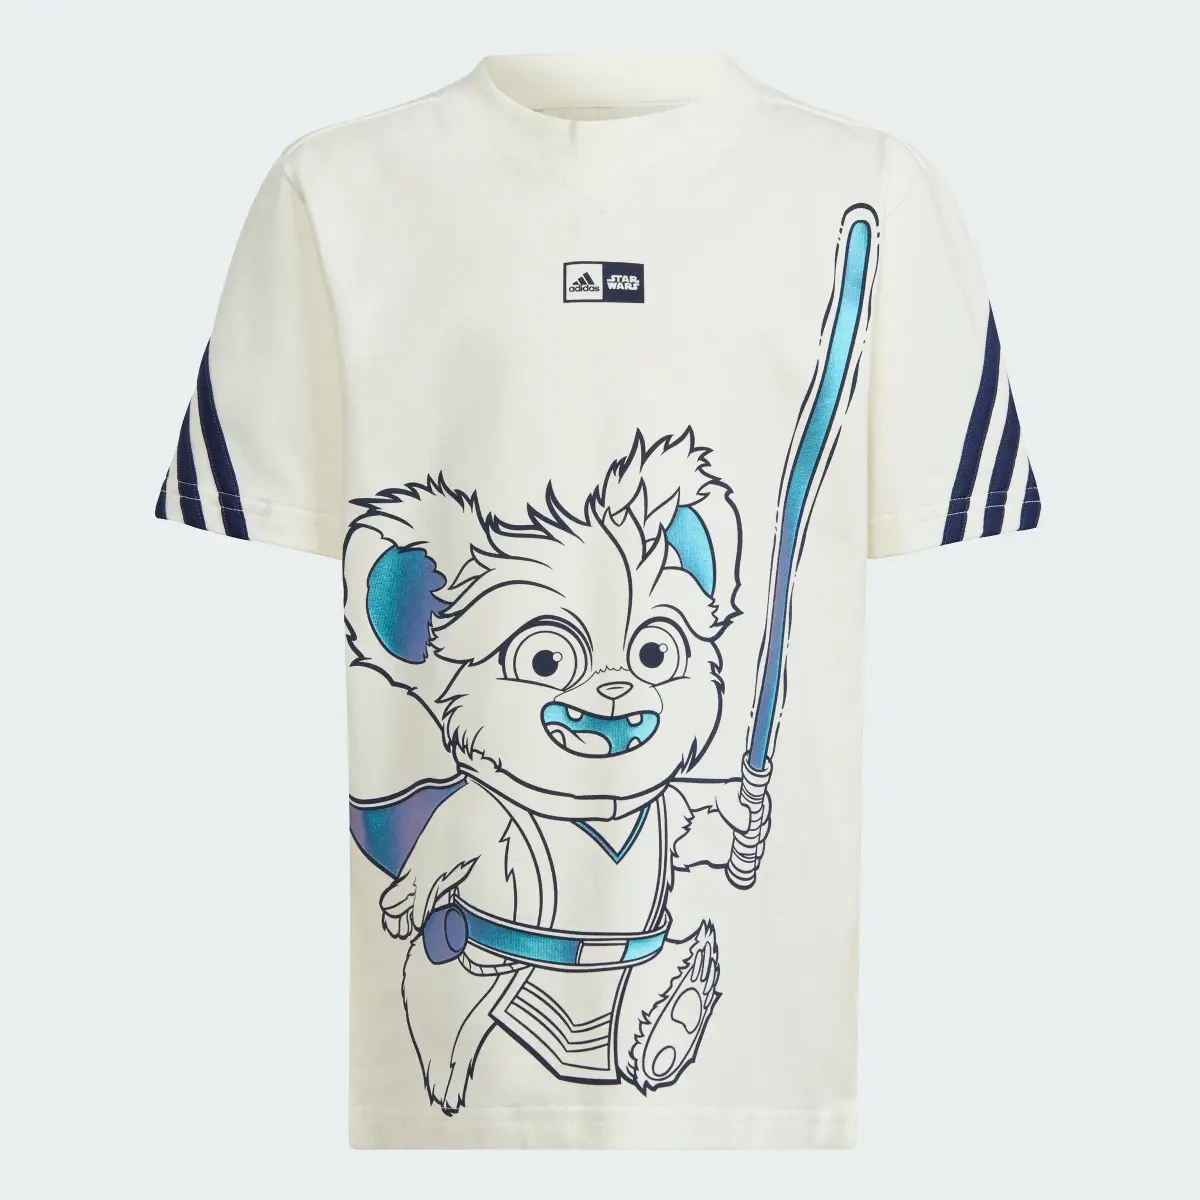 Adidas x Star Wars Young Jedi Tişört Takımı. 3